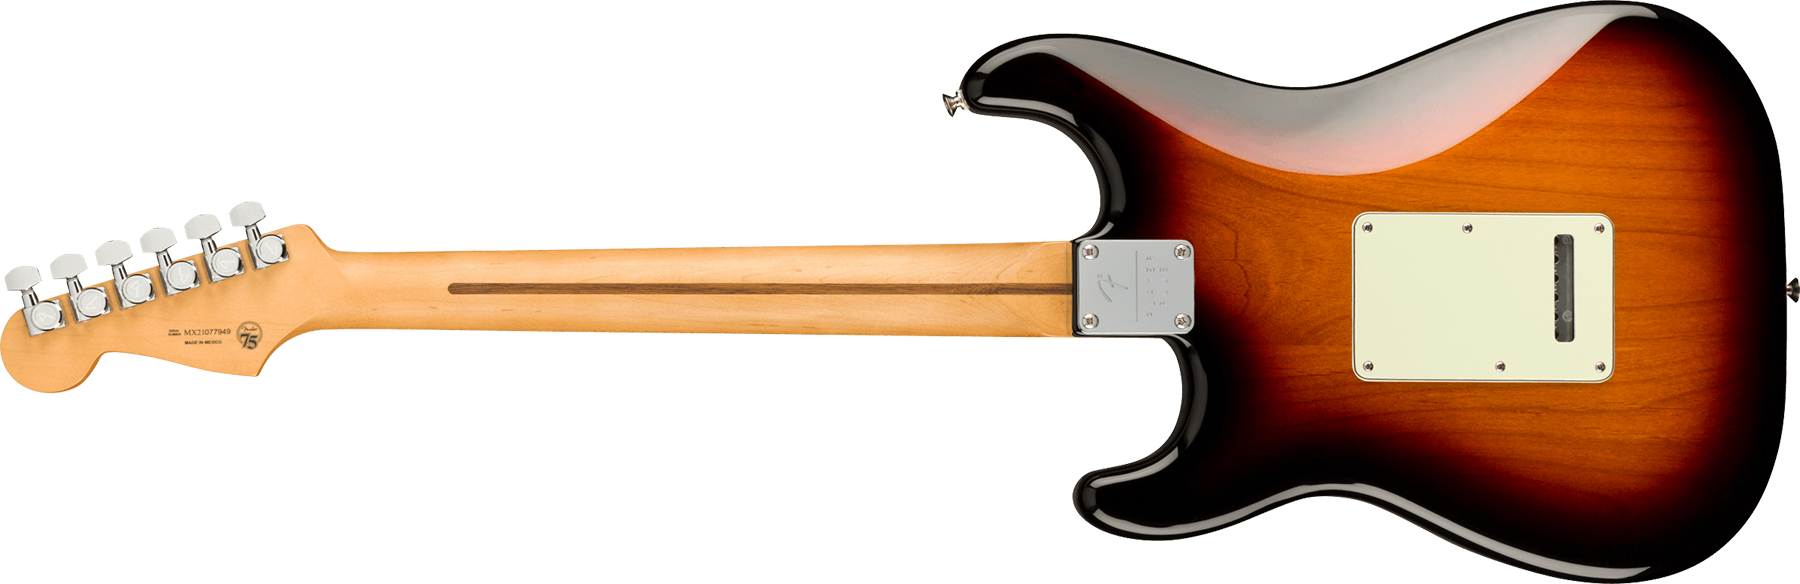 Fender Strat Player Plus Mex 3s Trem Mn - 3-color Sunburst - Str shape electric guitar - Variation 1